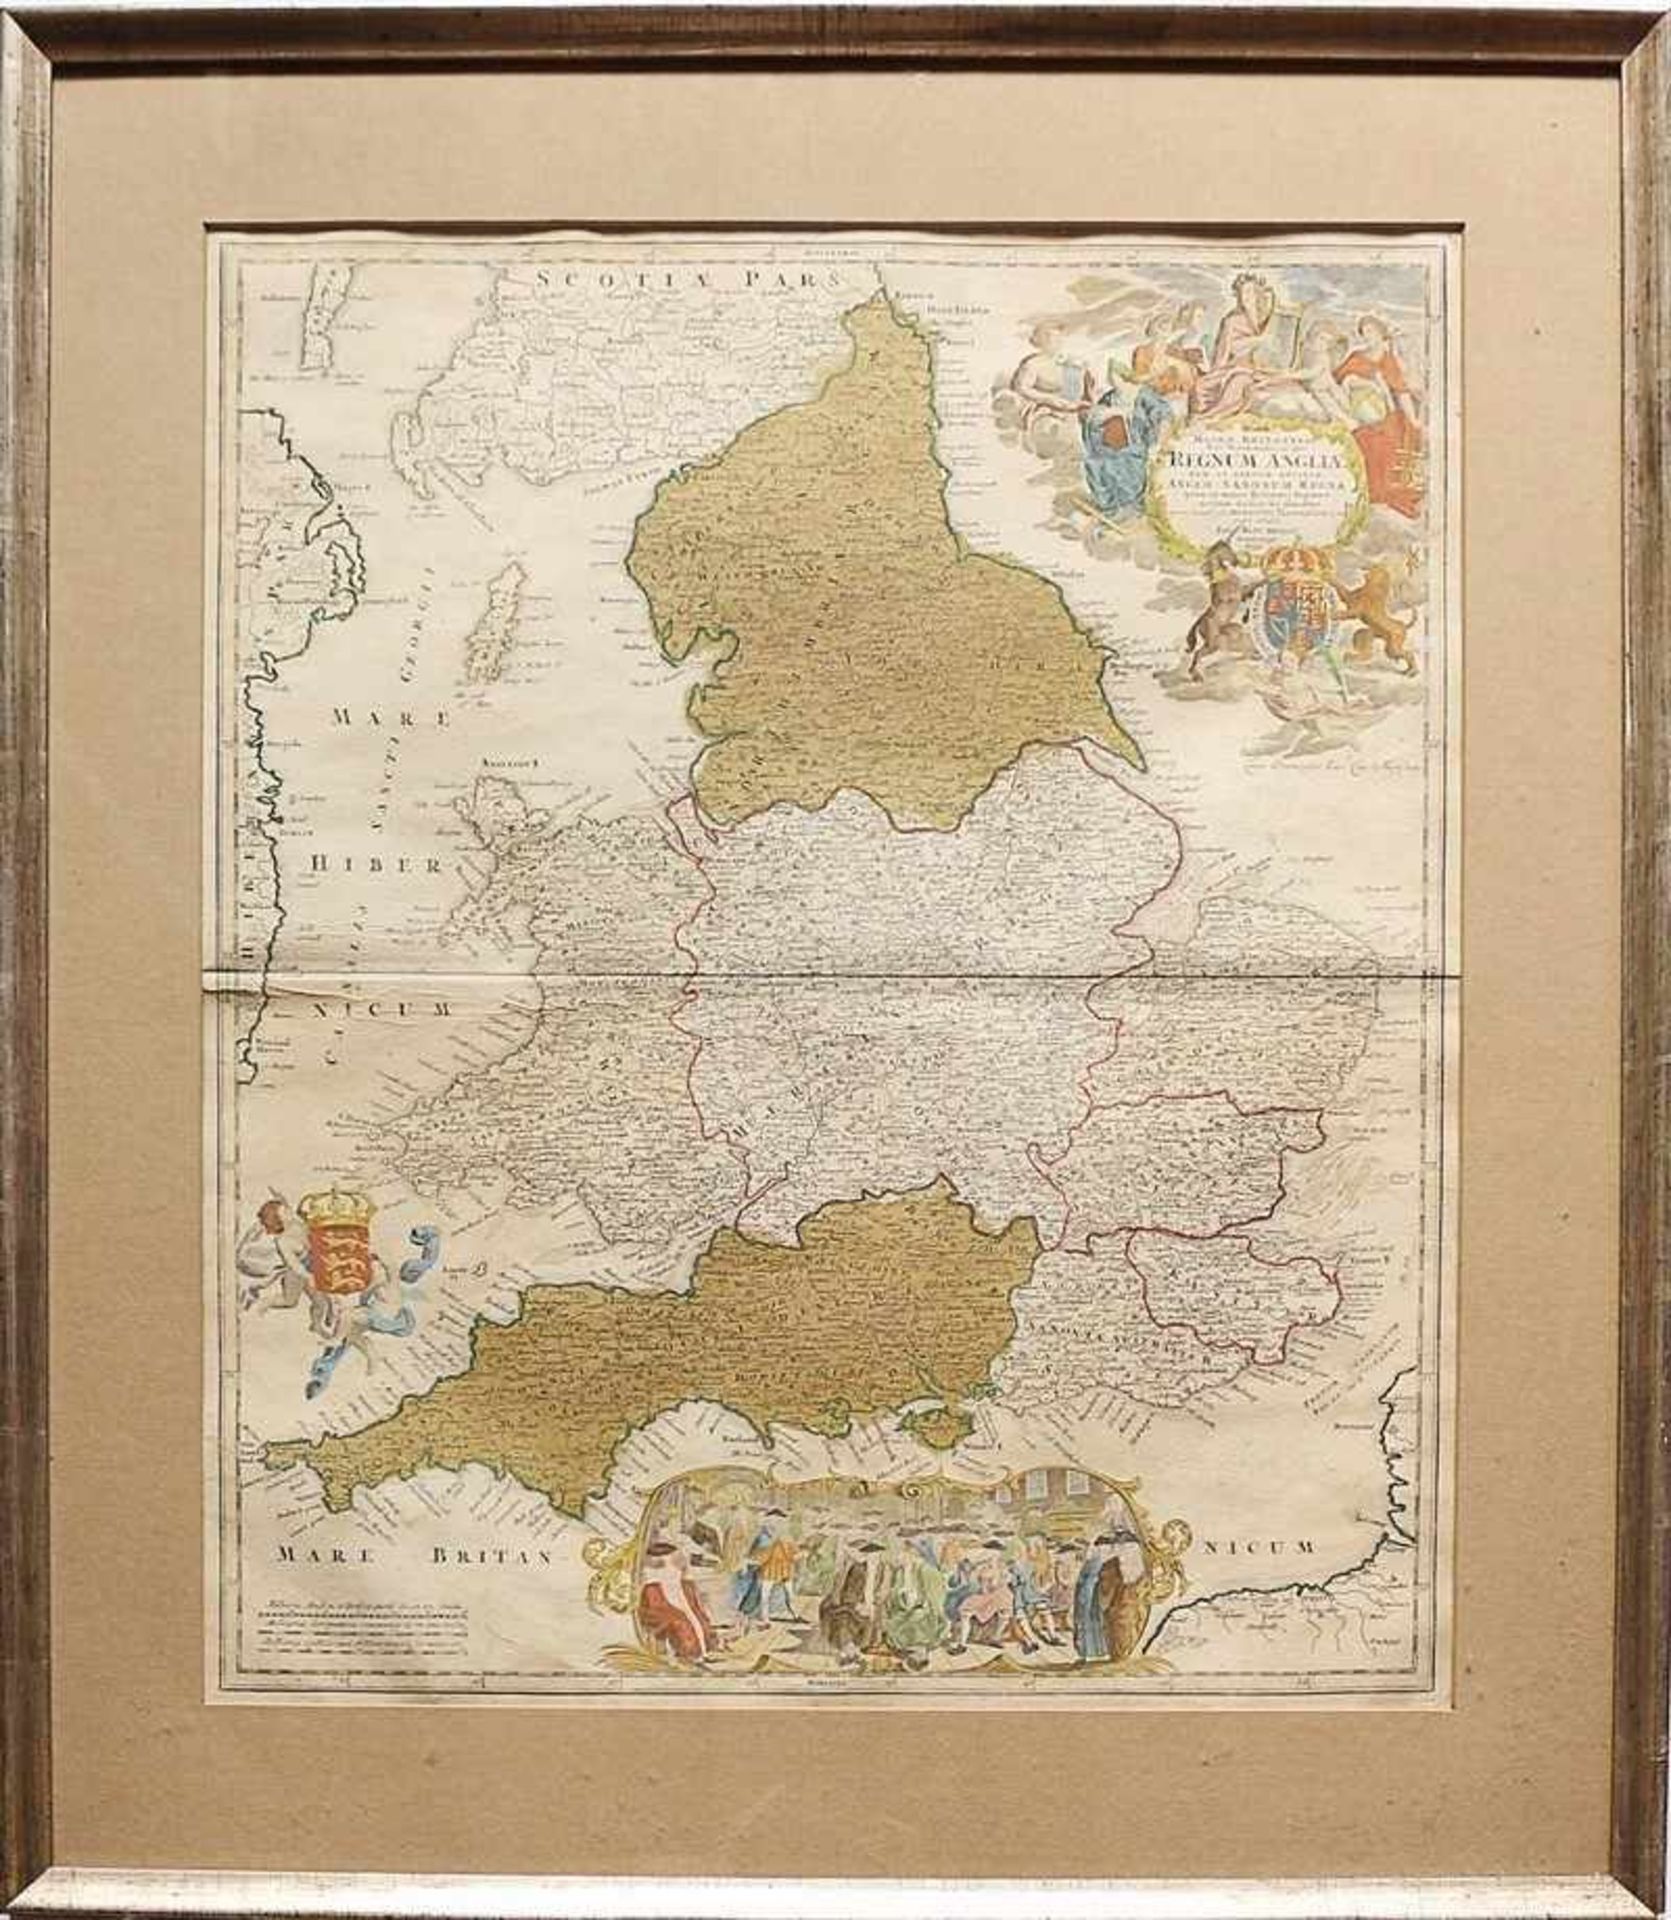 Karte - Homann, Johann Baptist 1664 Oberkammlach-1724 Nürnberg, "Magnae Britanniae pars Meridionalis